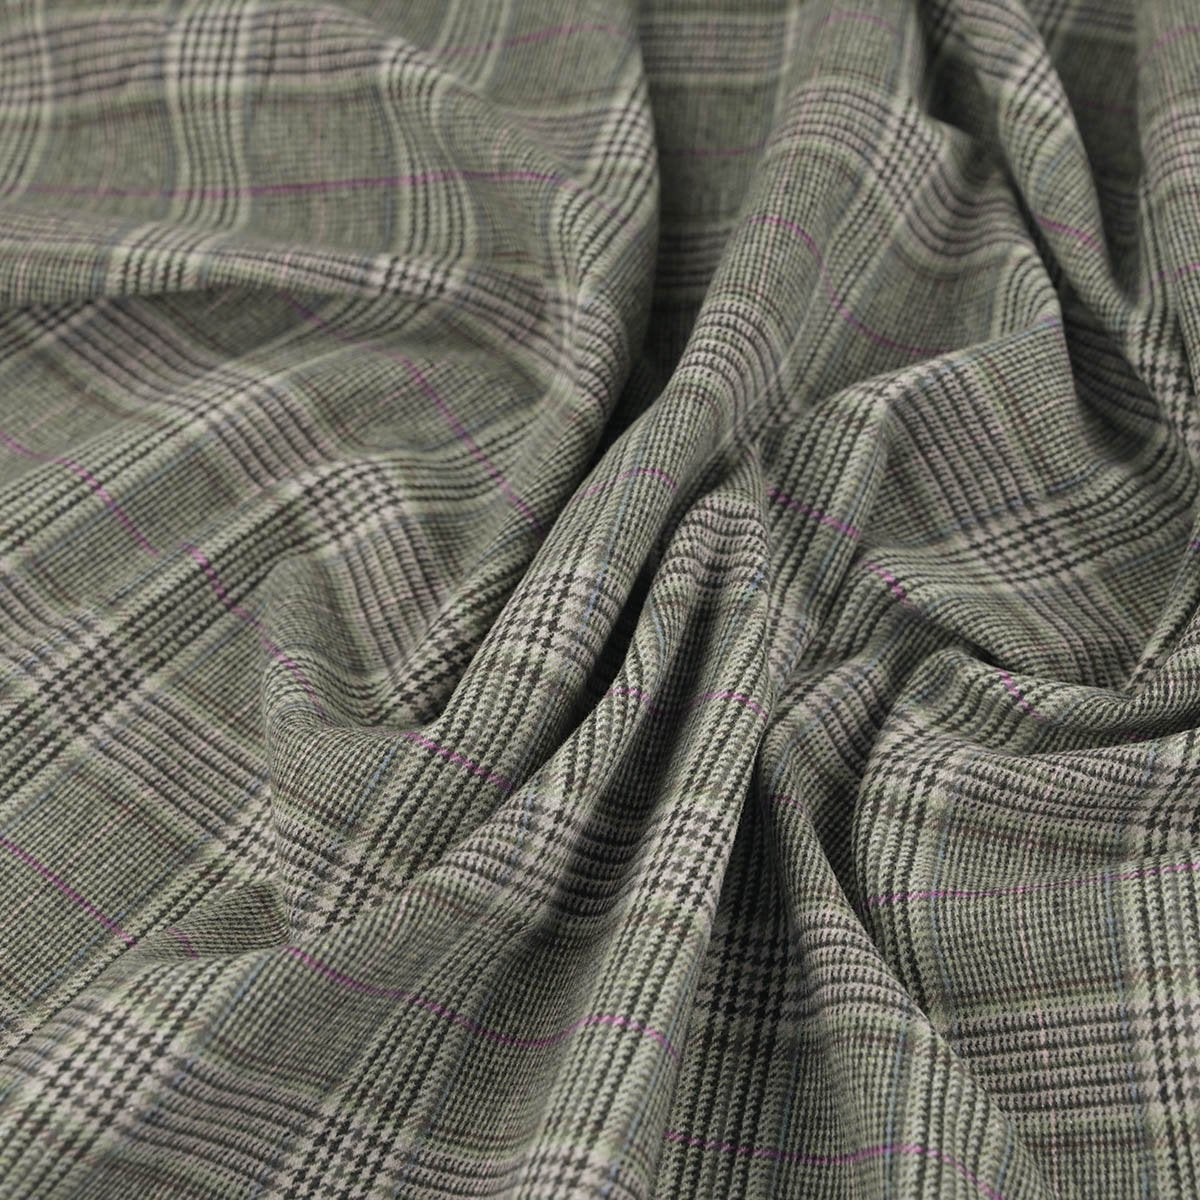 https://fabrics4fashion.com/cdn/shop/products/Grey_Check_Twill_Flannel_Fabric_97540_4.jpg?v=1669821806&width=1200